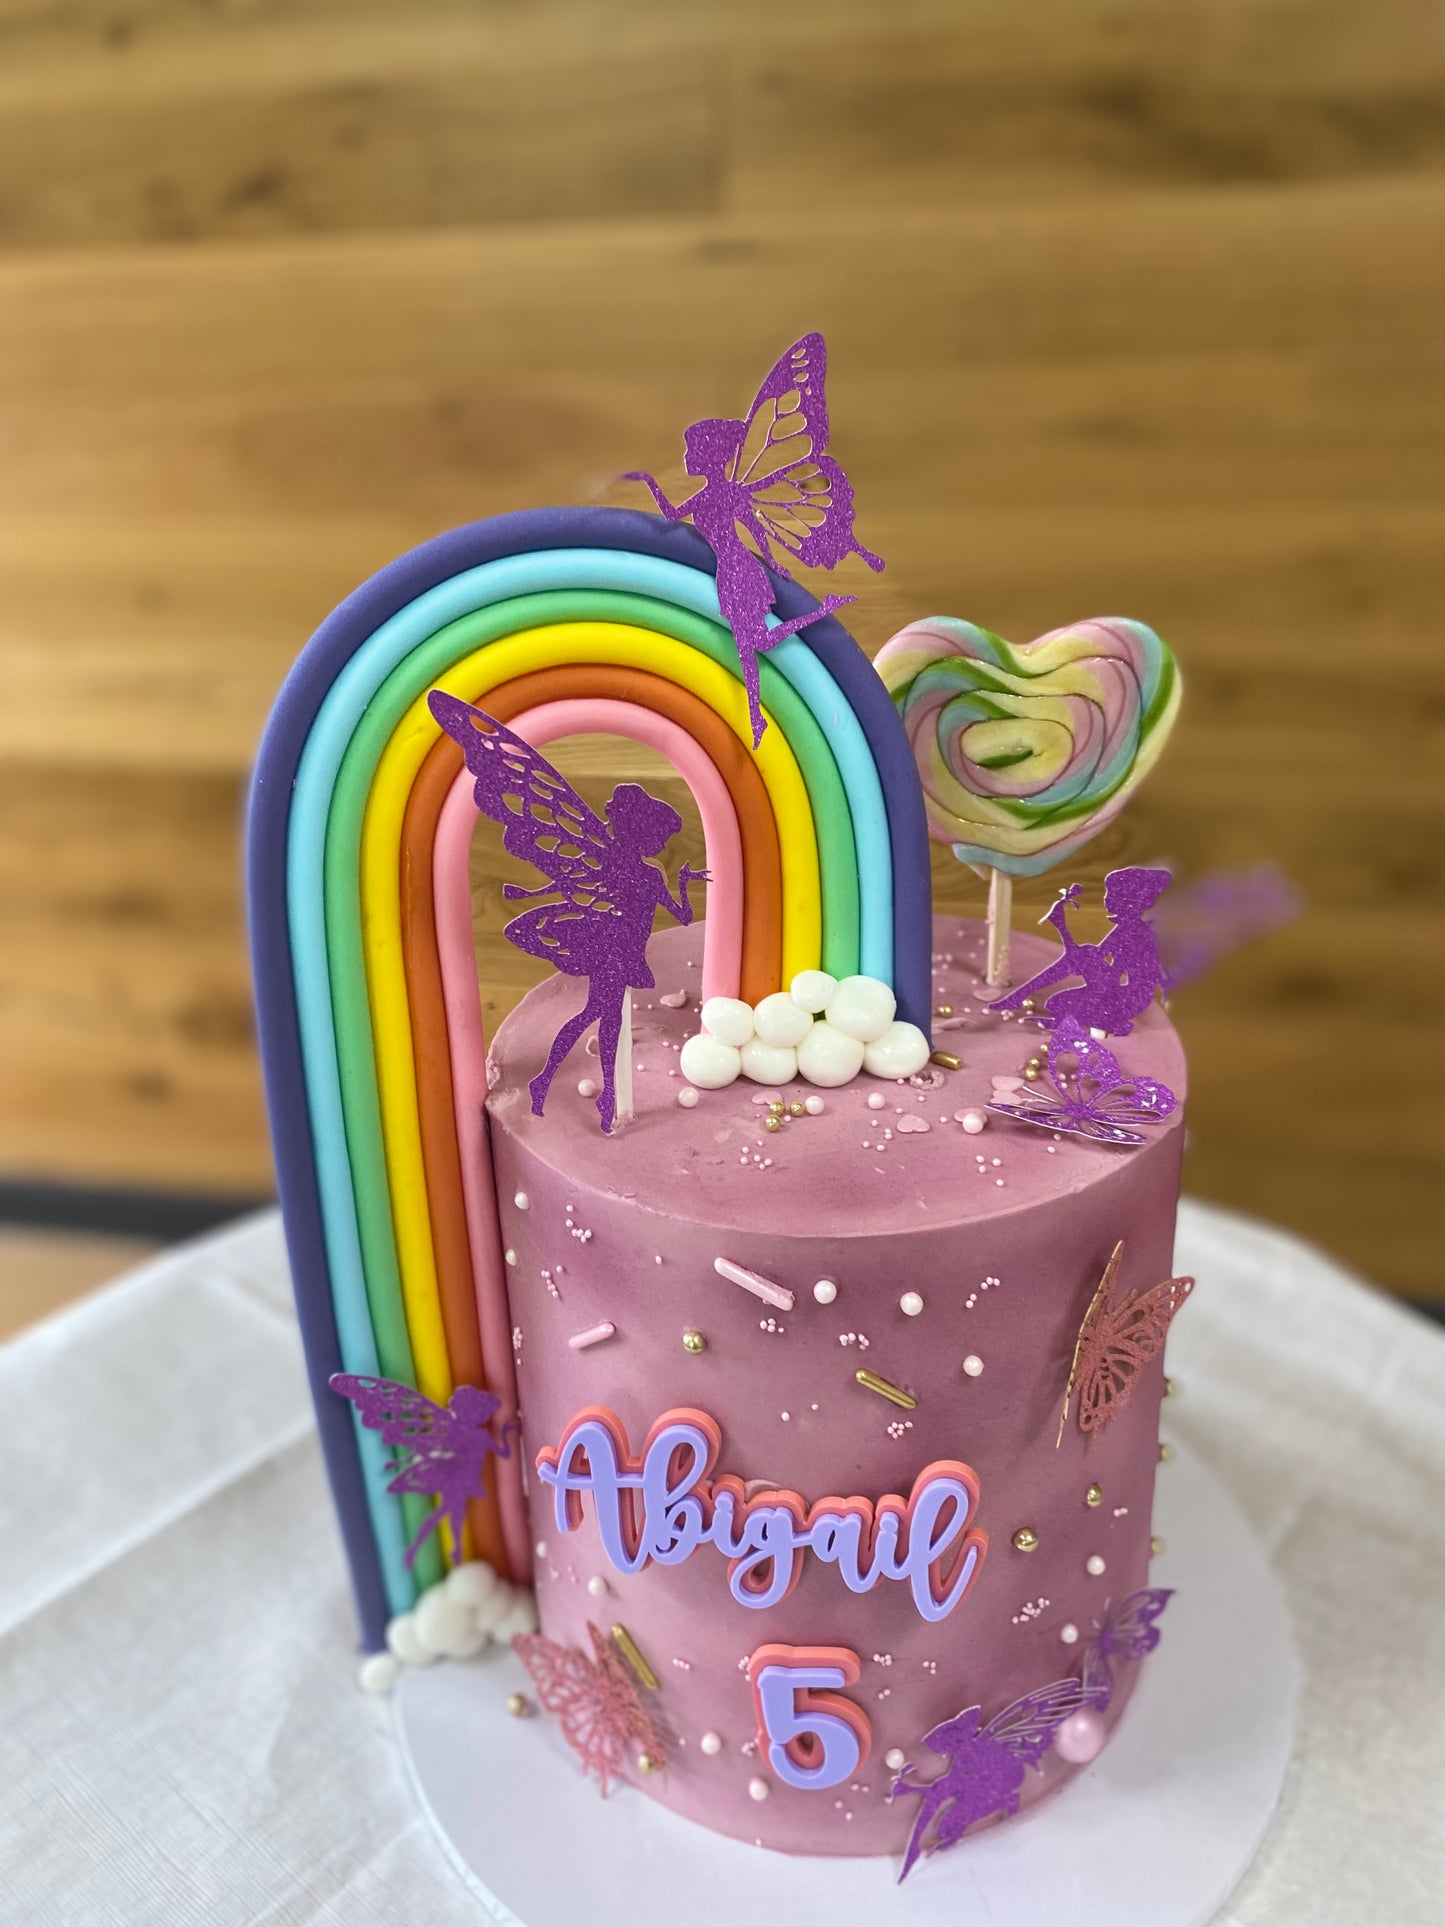 Butterflies, fairies and rainbow buttercream cake